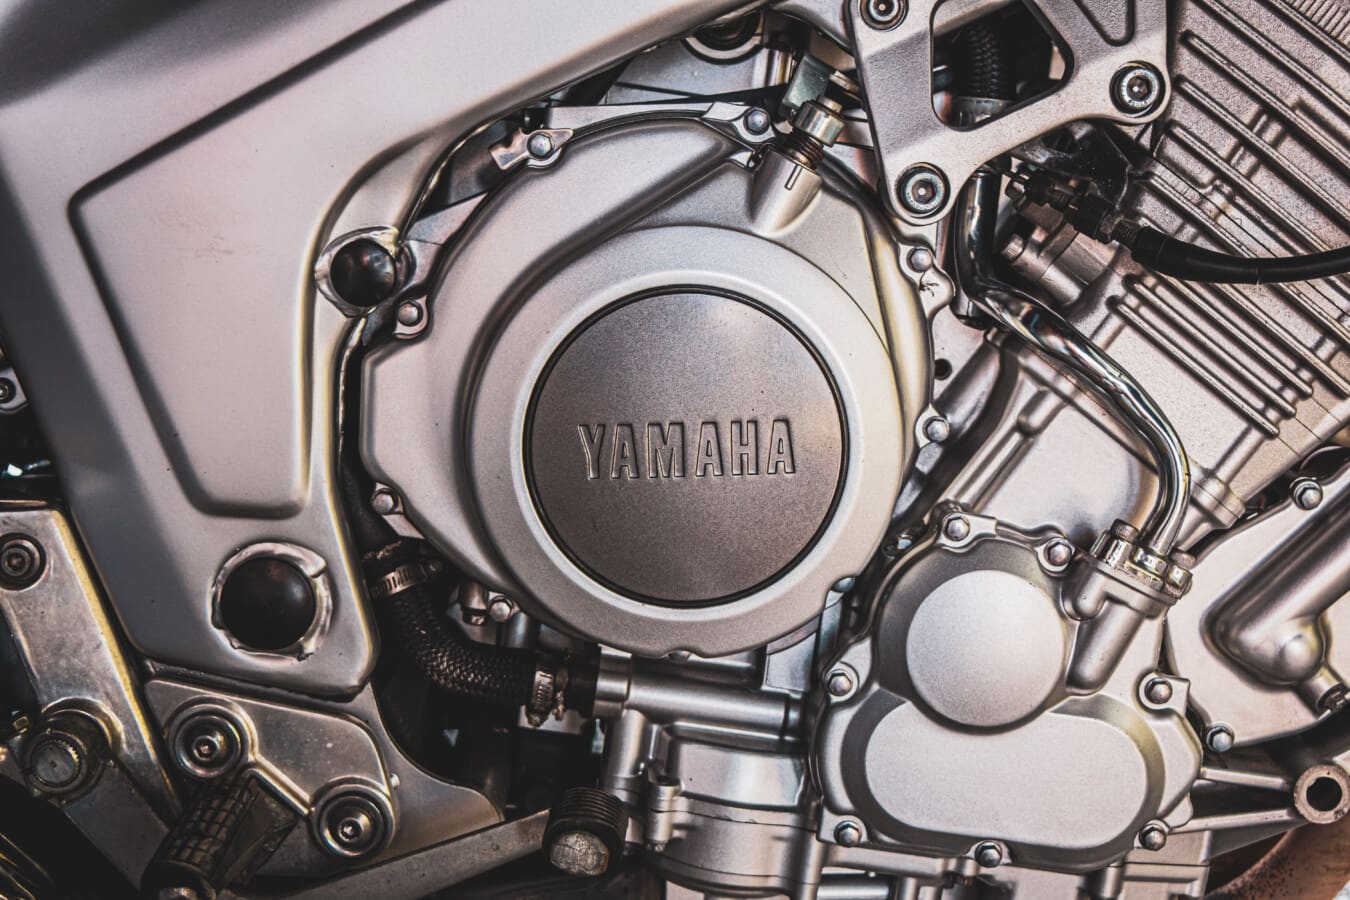 Yamaha, moto, moteur, métalliques, chrome, ingénierie, atelier de réparation, technologie, secteur d'activité, électronique